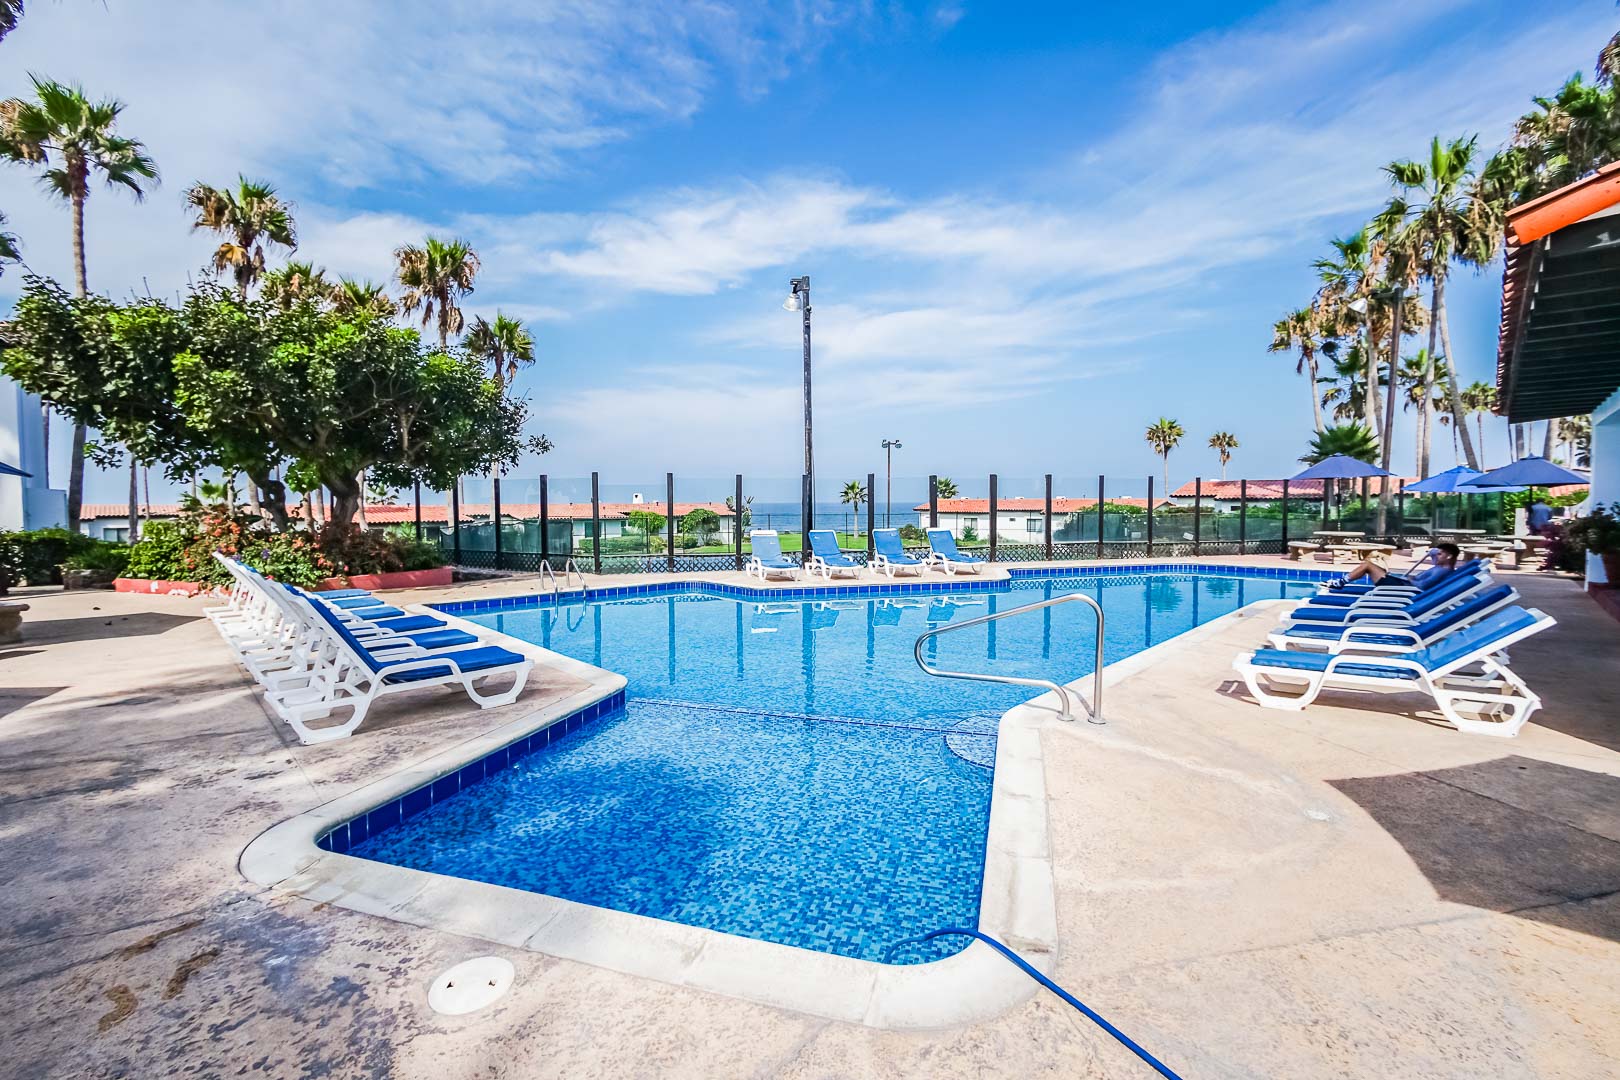 A crisp outdoor swimming pool at VRI's La Paloma in Rosarito, Mexico.